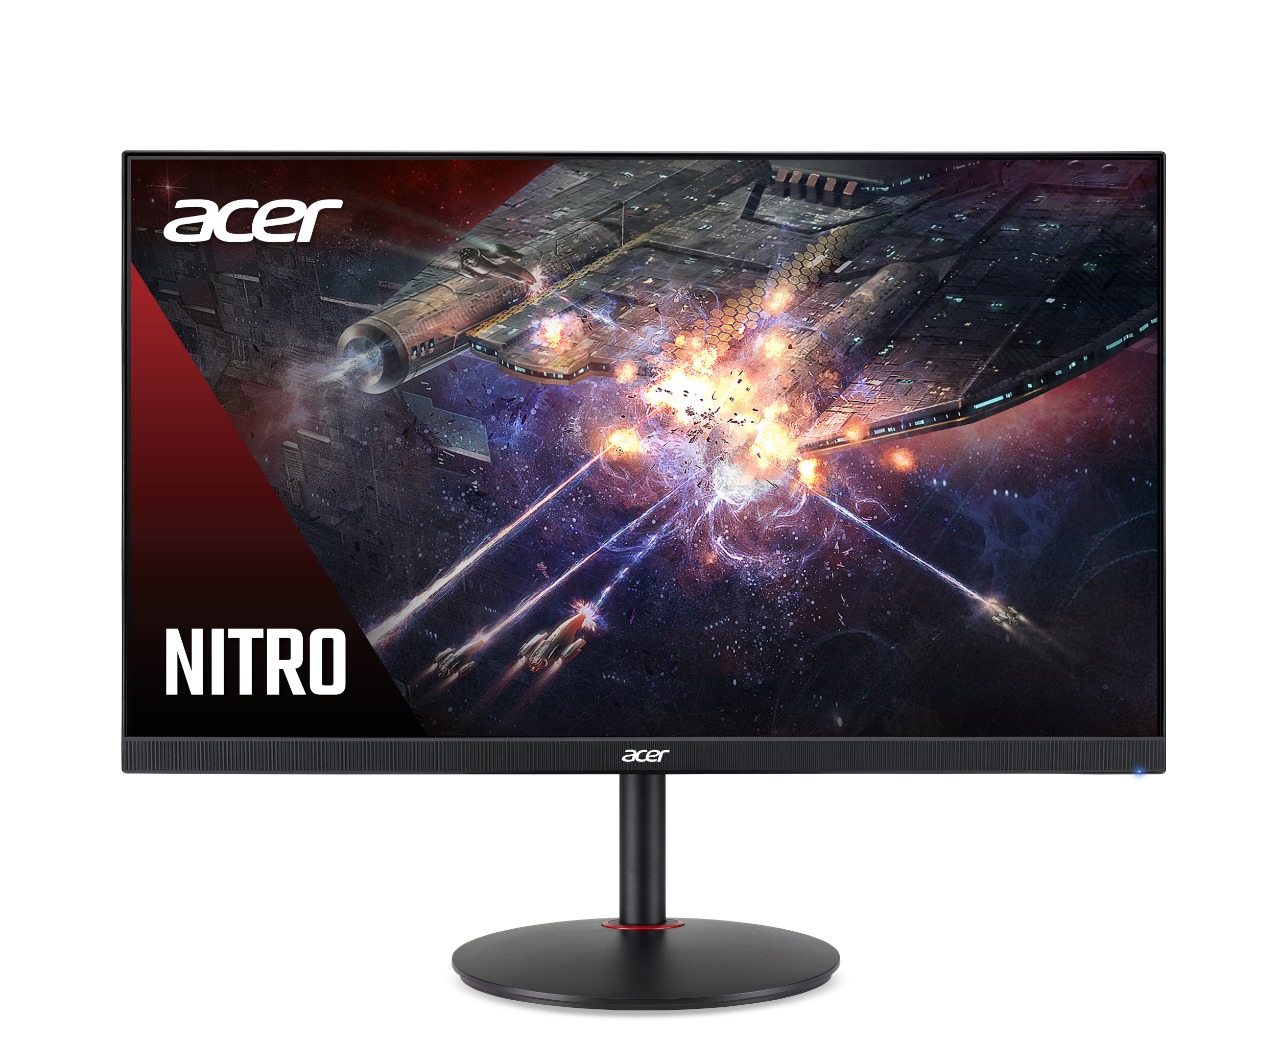 Acer ha ampliado su galardonada línea de monitores con una nueva variedad de potentes monitores adecuados para una amplia gama de jugadores.